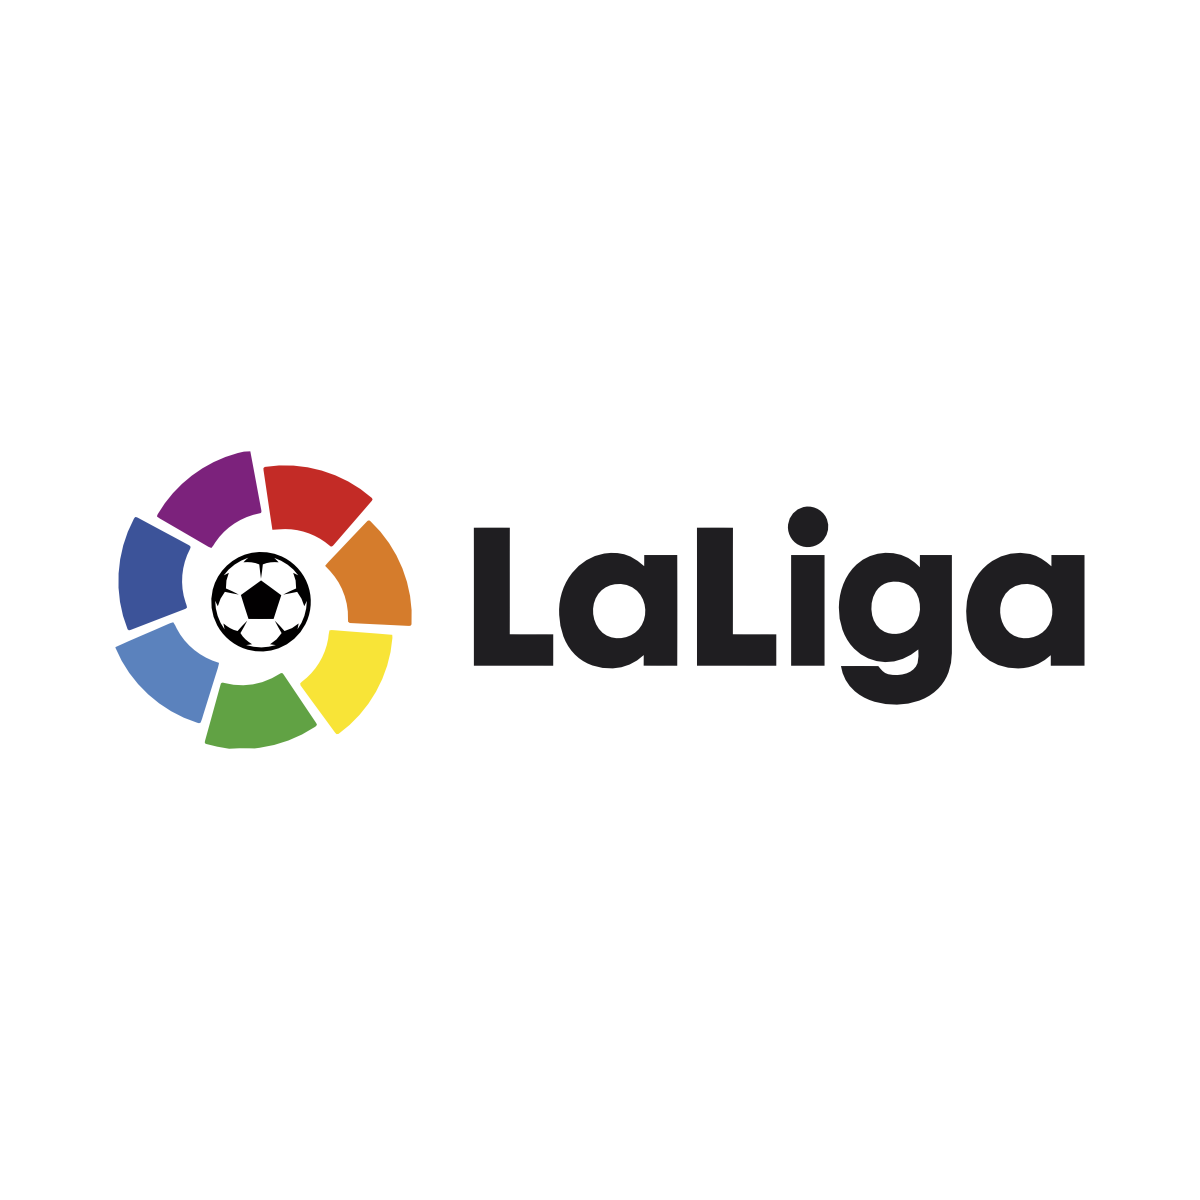 Download La Liga Logo - La Liga Logo Png PNG Image with No Background -  PNGkey.com